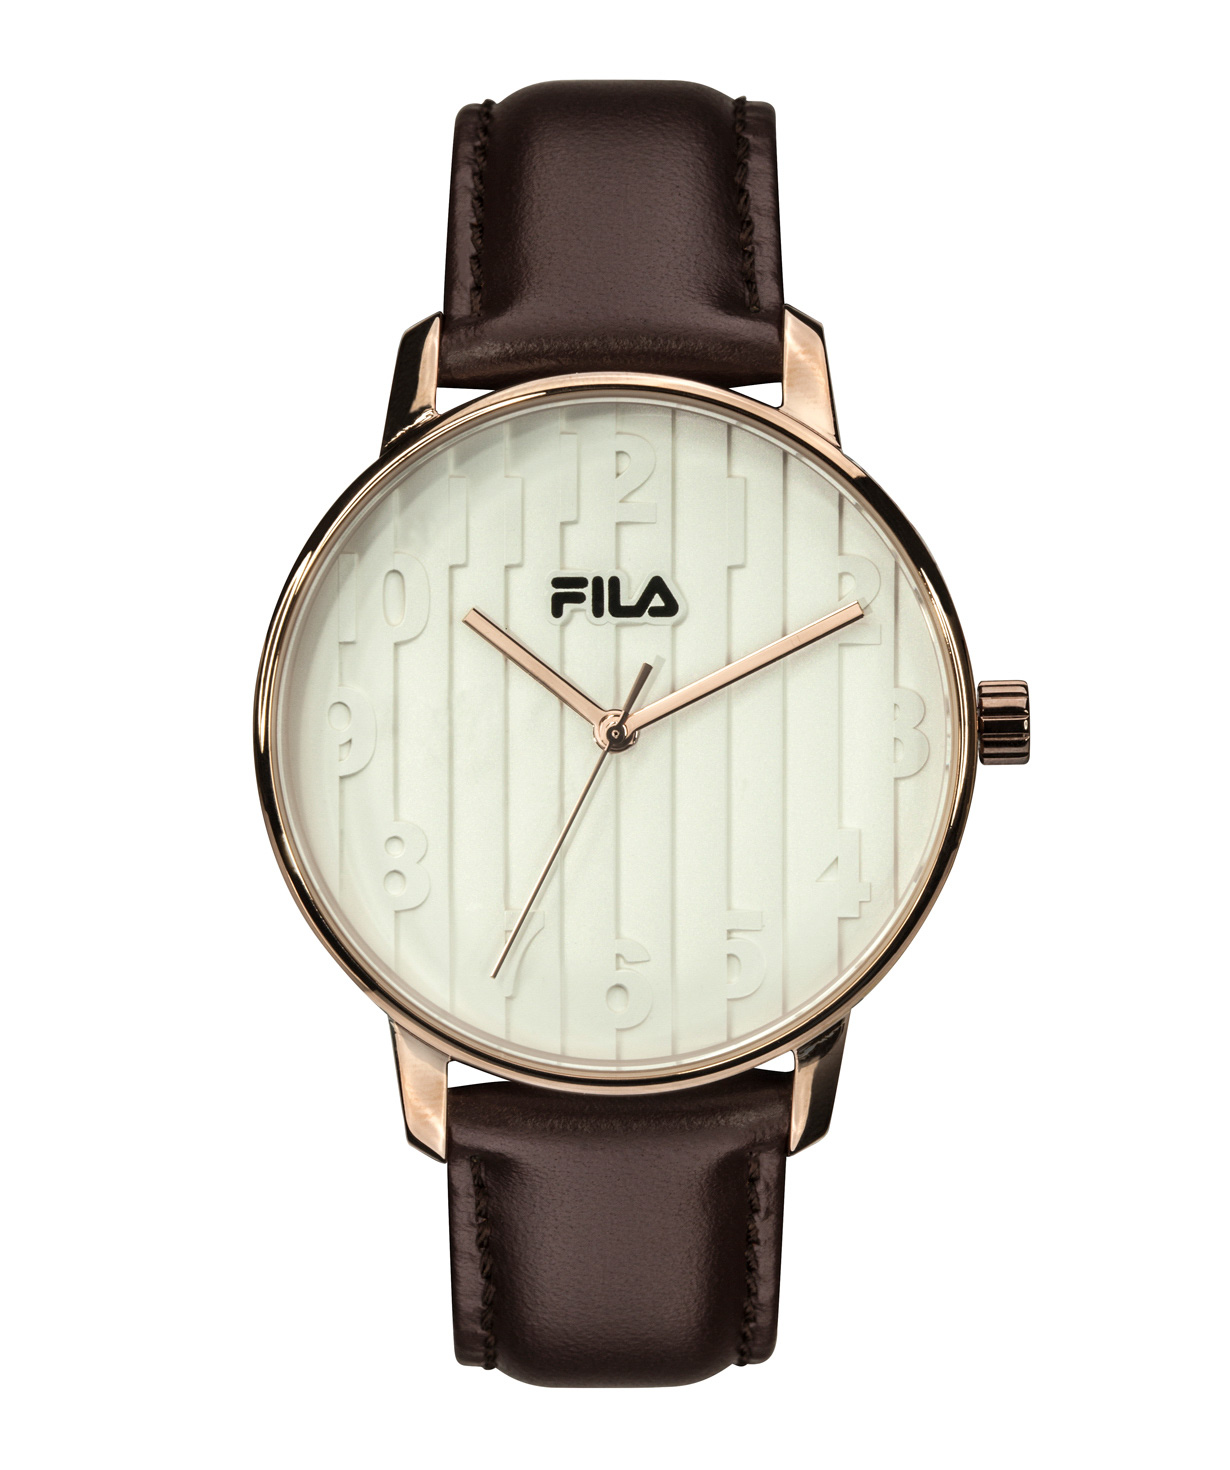 Ժամացույց «FILA» 38-197-003 կանացի